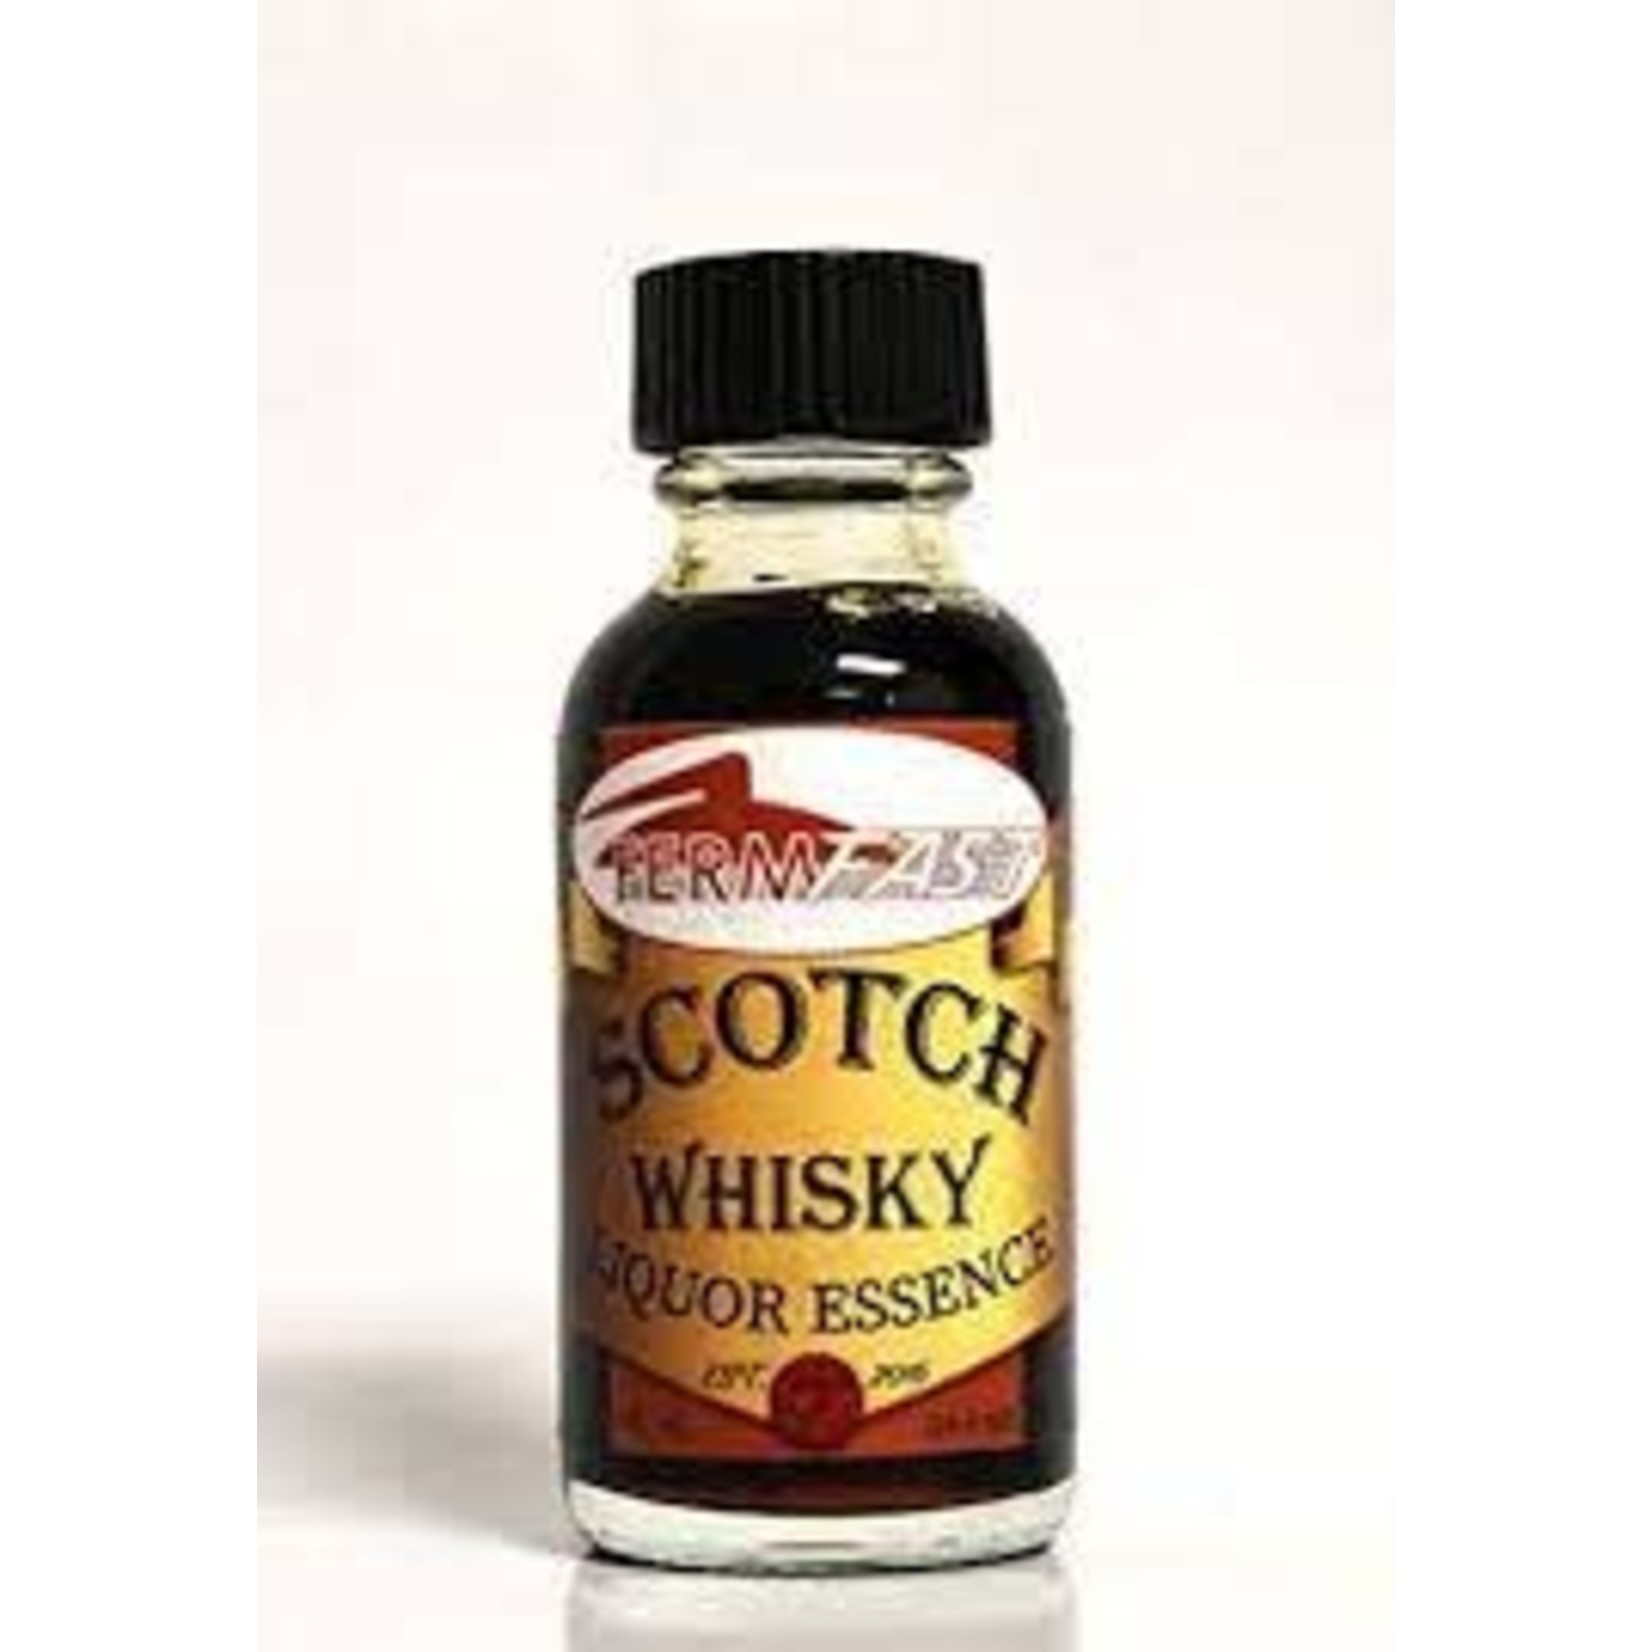 Fermfast Scotch Whisky Essence 1 oz